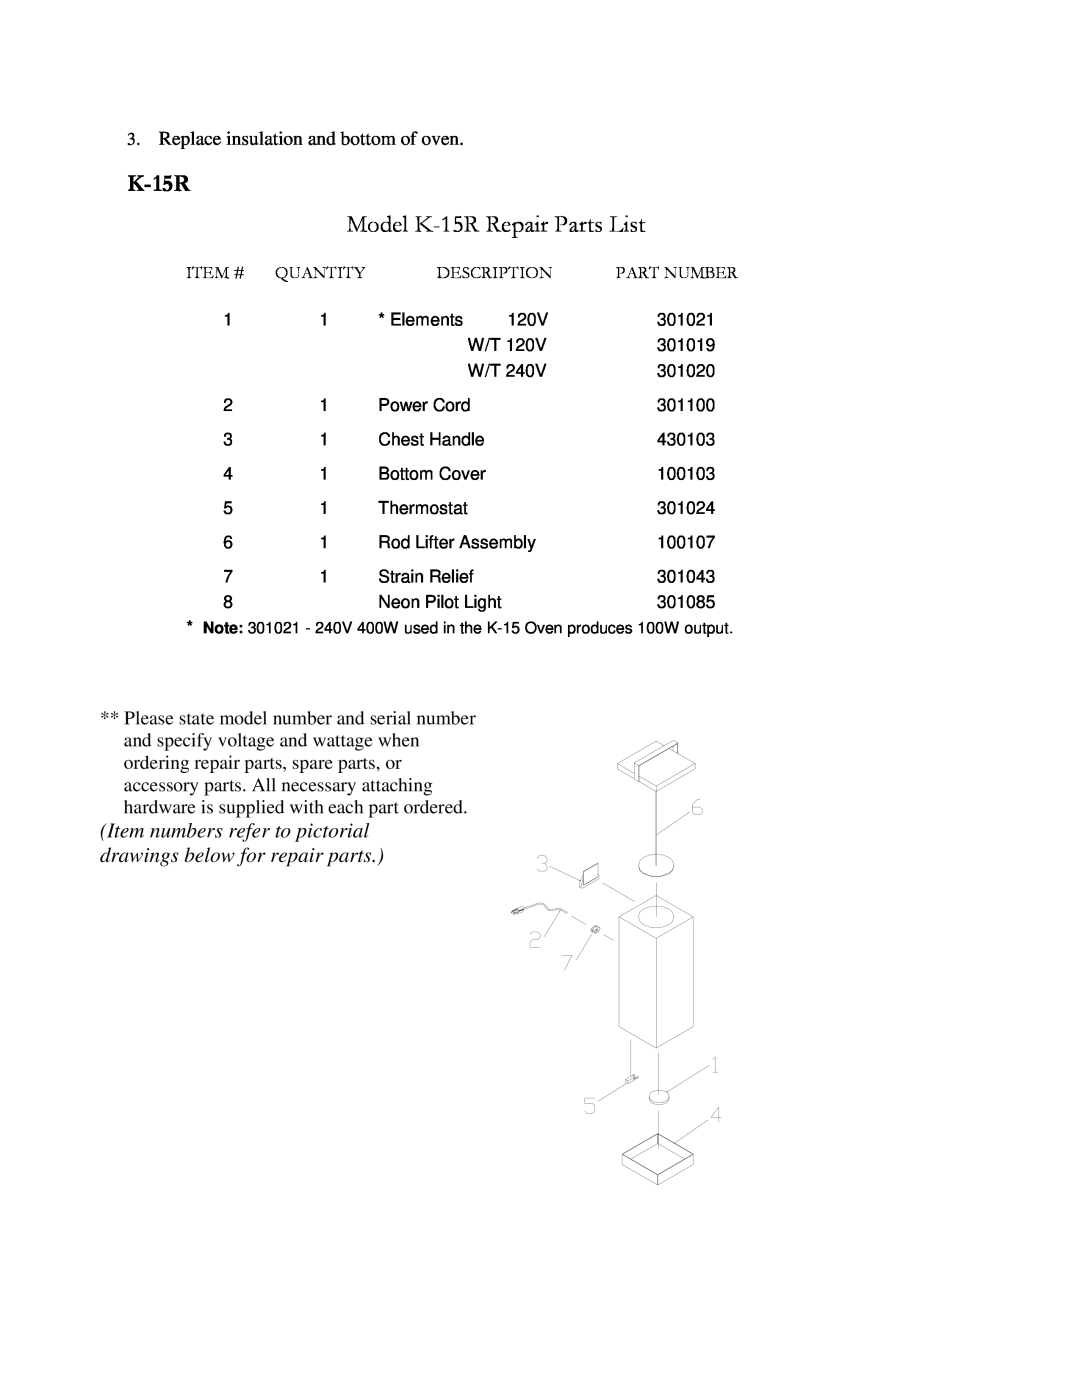 Henkel manual Model K-15RRepair Parts List 